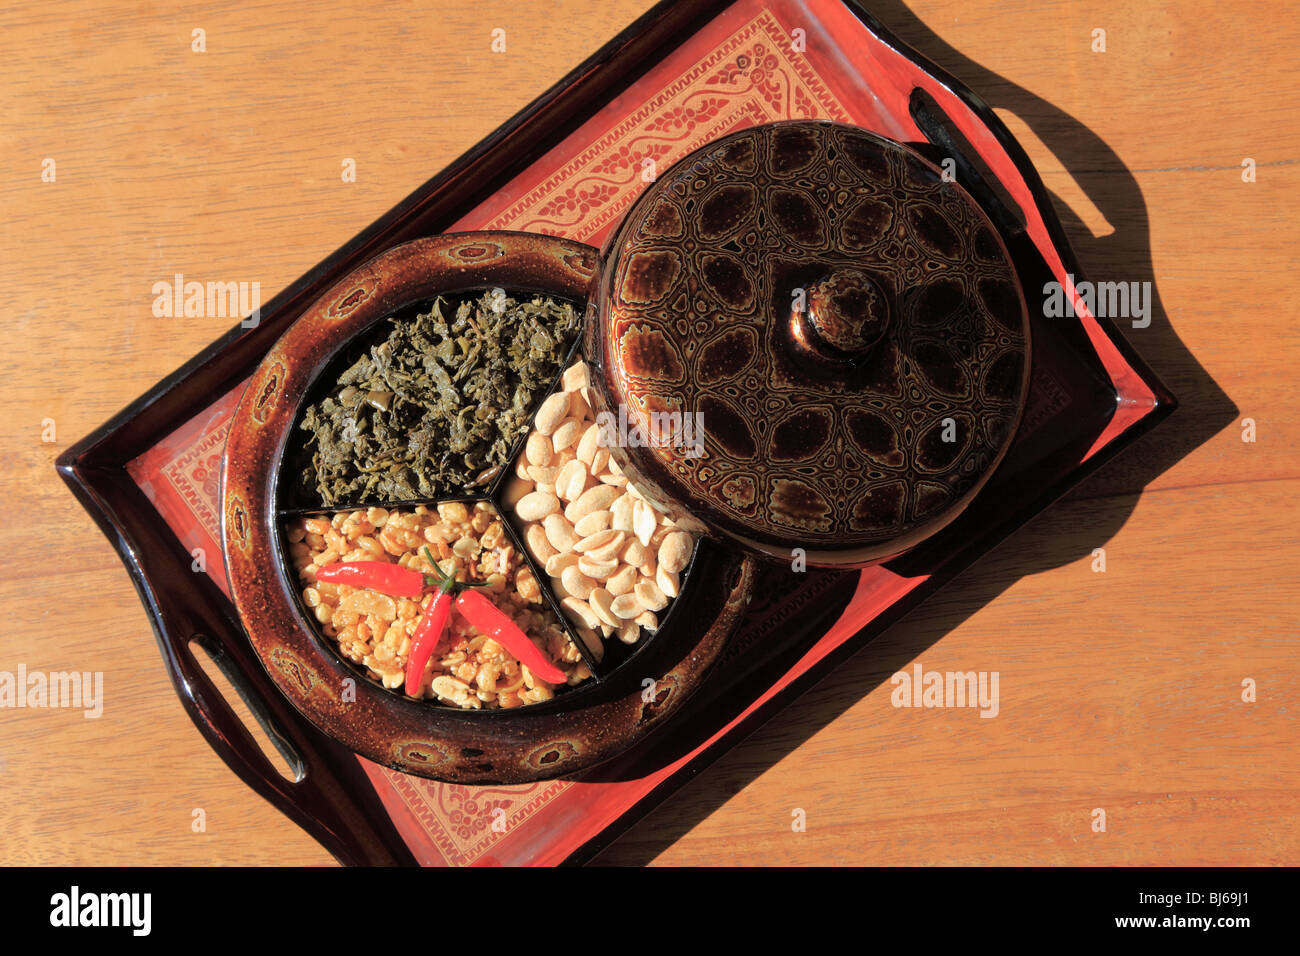 Myanmar, Burma, Lephet, fermented tea leaf salad Stock Photo